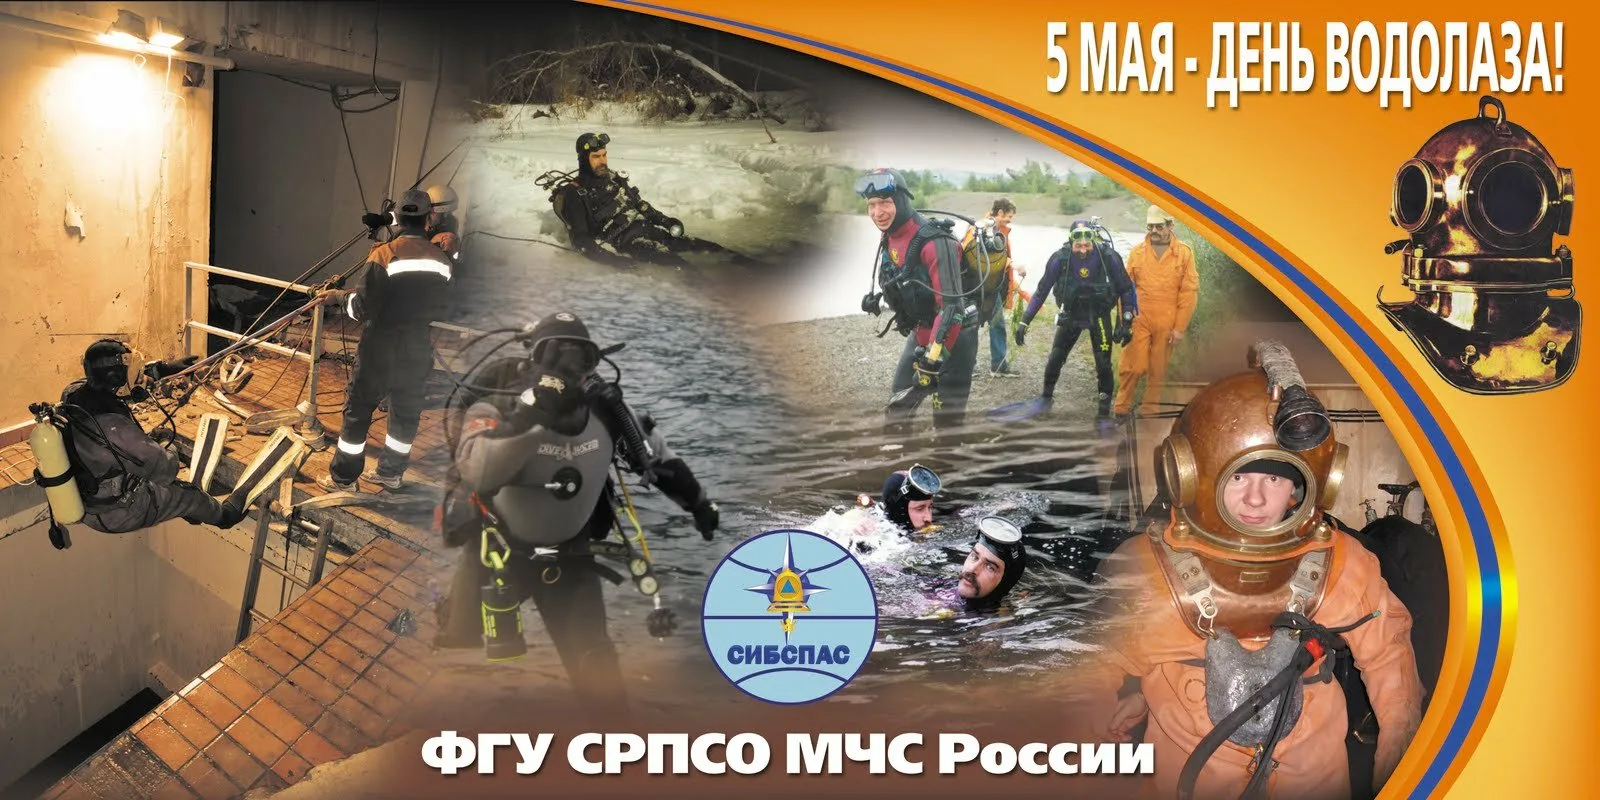 Сегодня 5 мая. День водолаза в России. Водолаз на дне. 5 Мая день водолаза. День водолаза в России открытка.